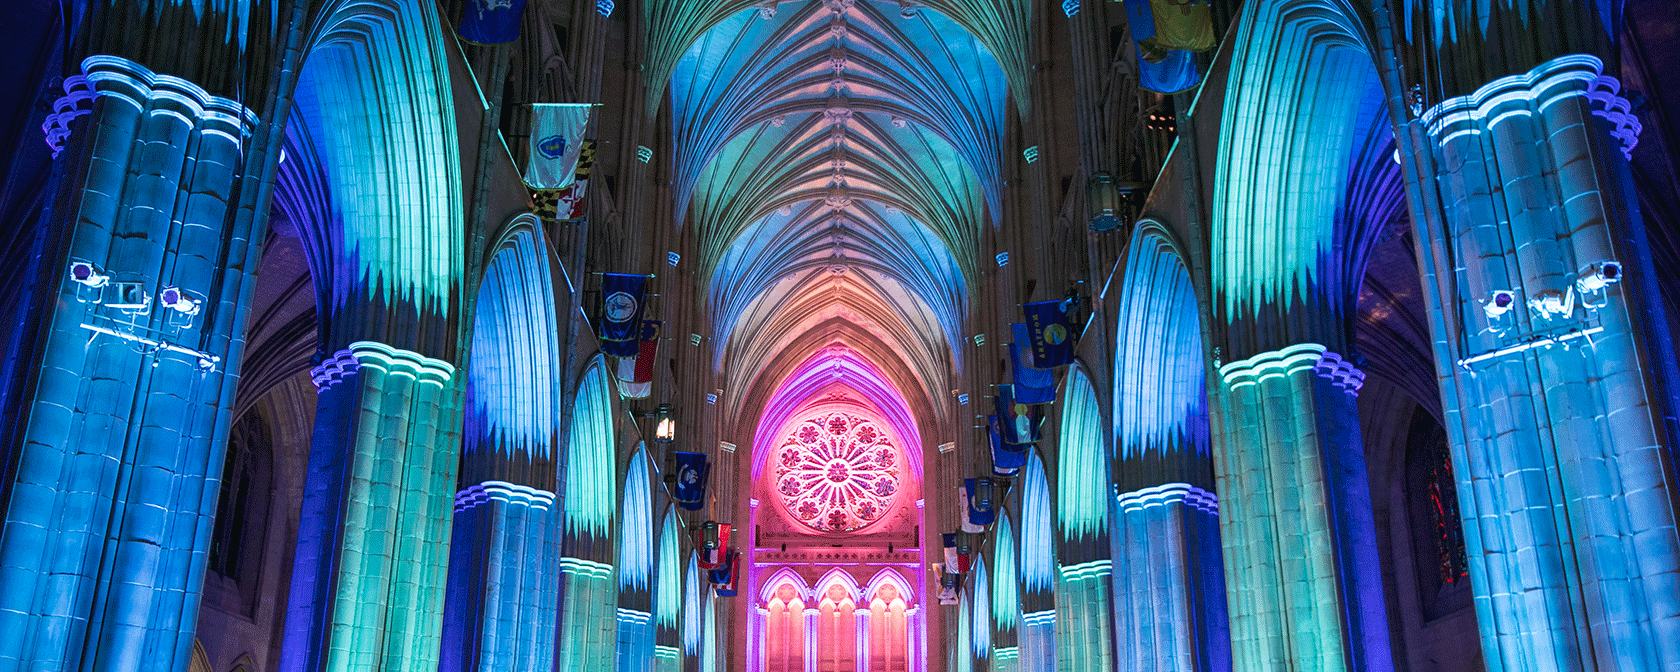 Catedral iluminada por dentro com luzes azuis e rosa (Crédito: Jason Dixson)